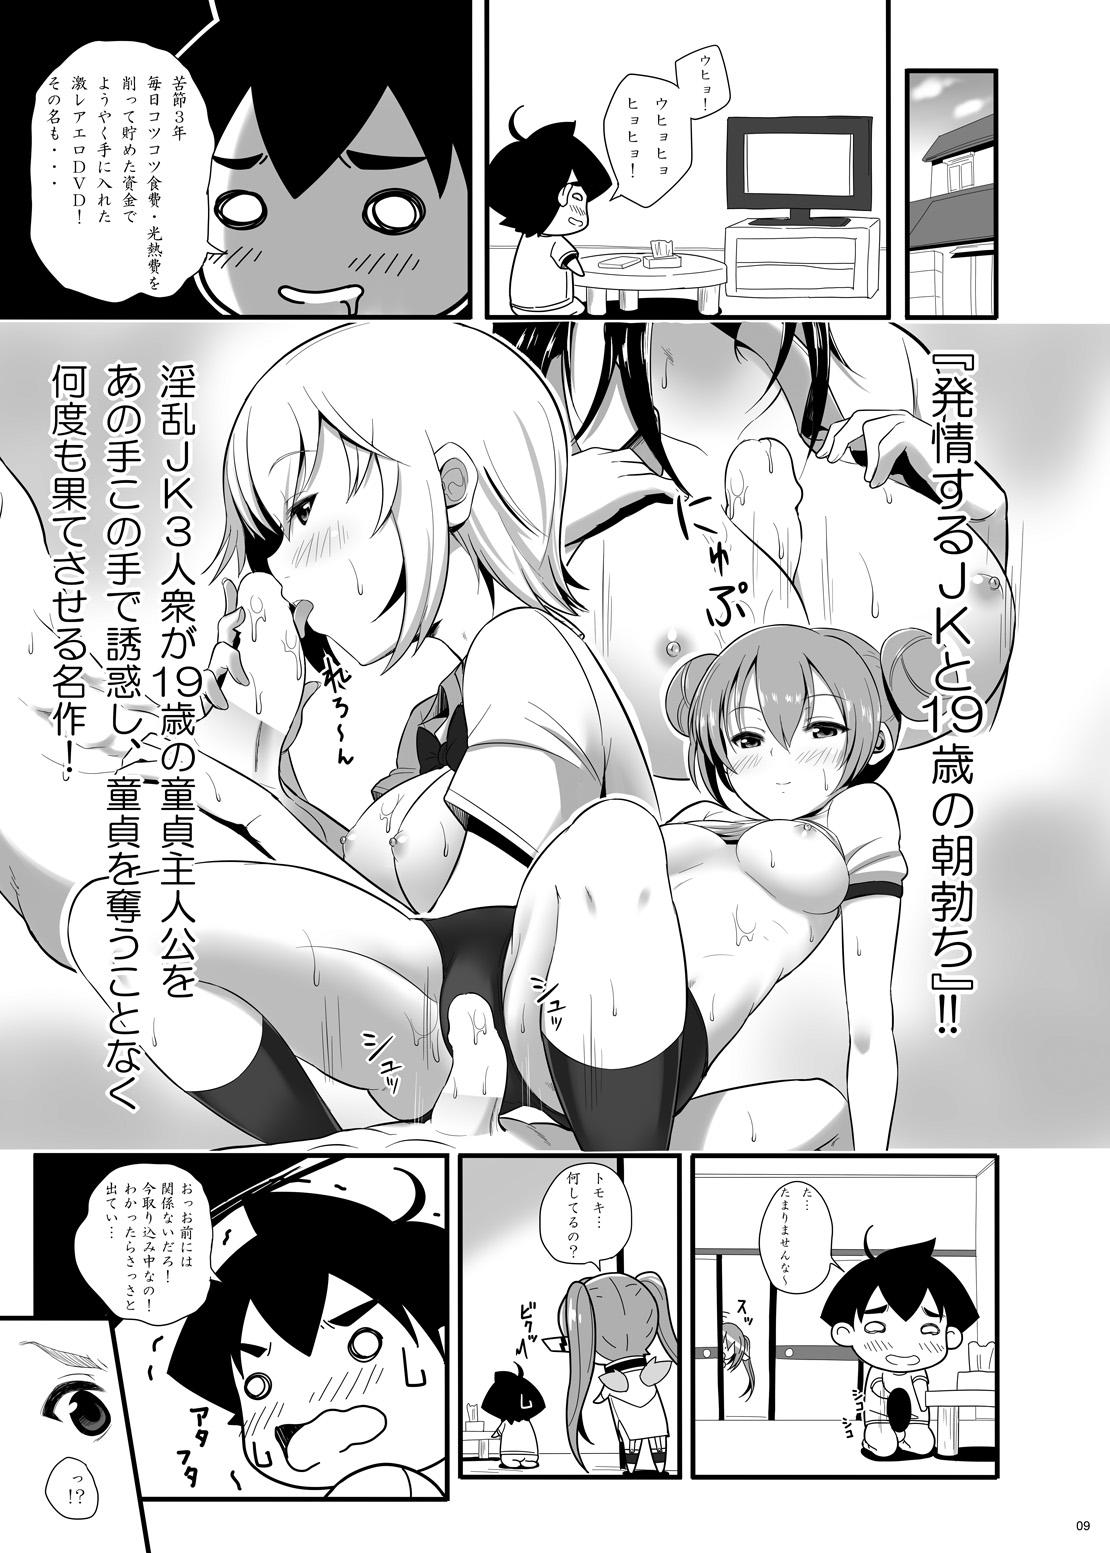 Amigos Nymph ga Ninpu ni Naru Toki - Sora no otoshimono Webcamchat - Page 8